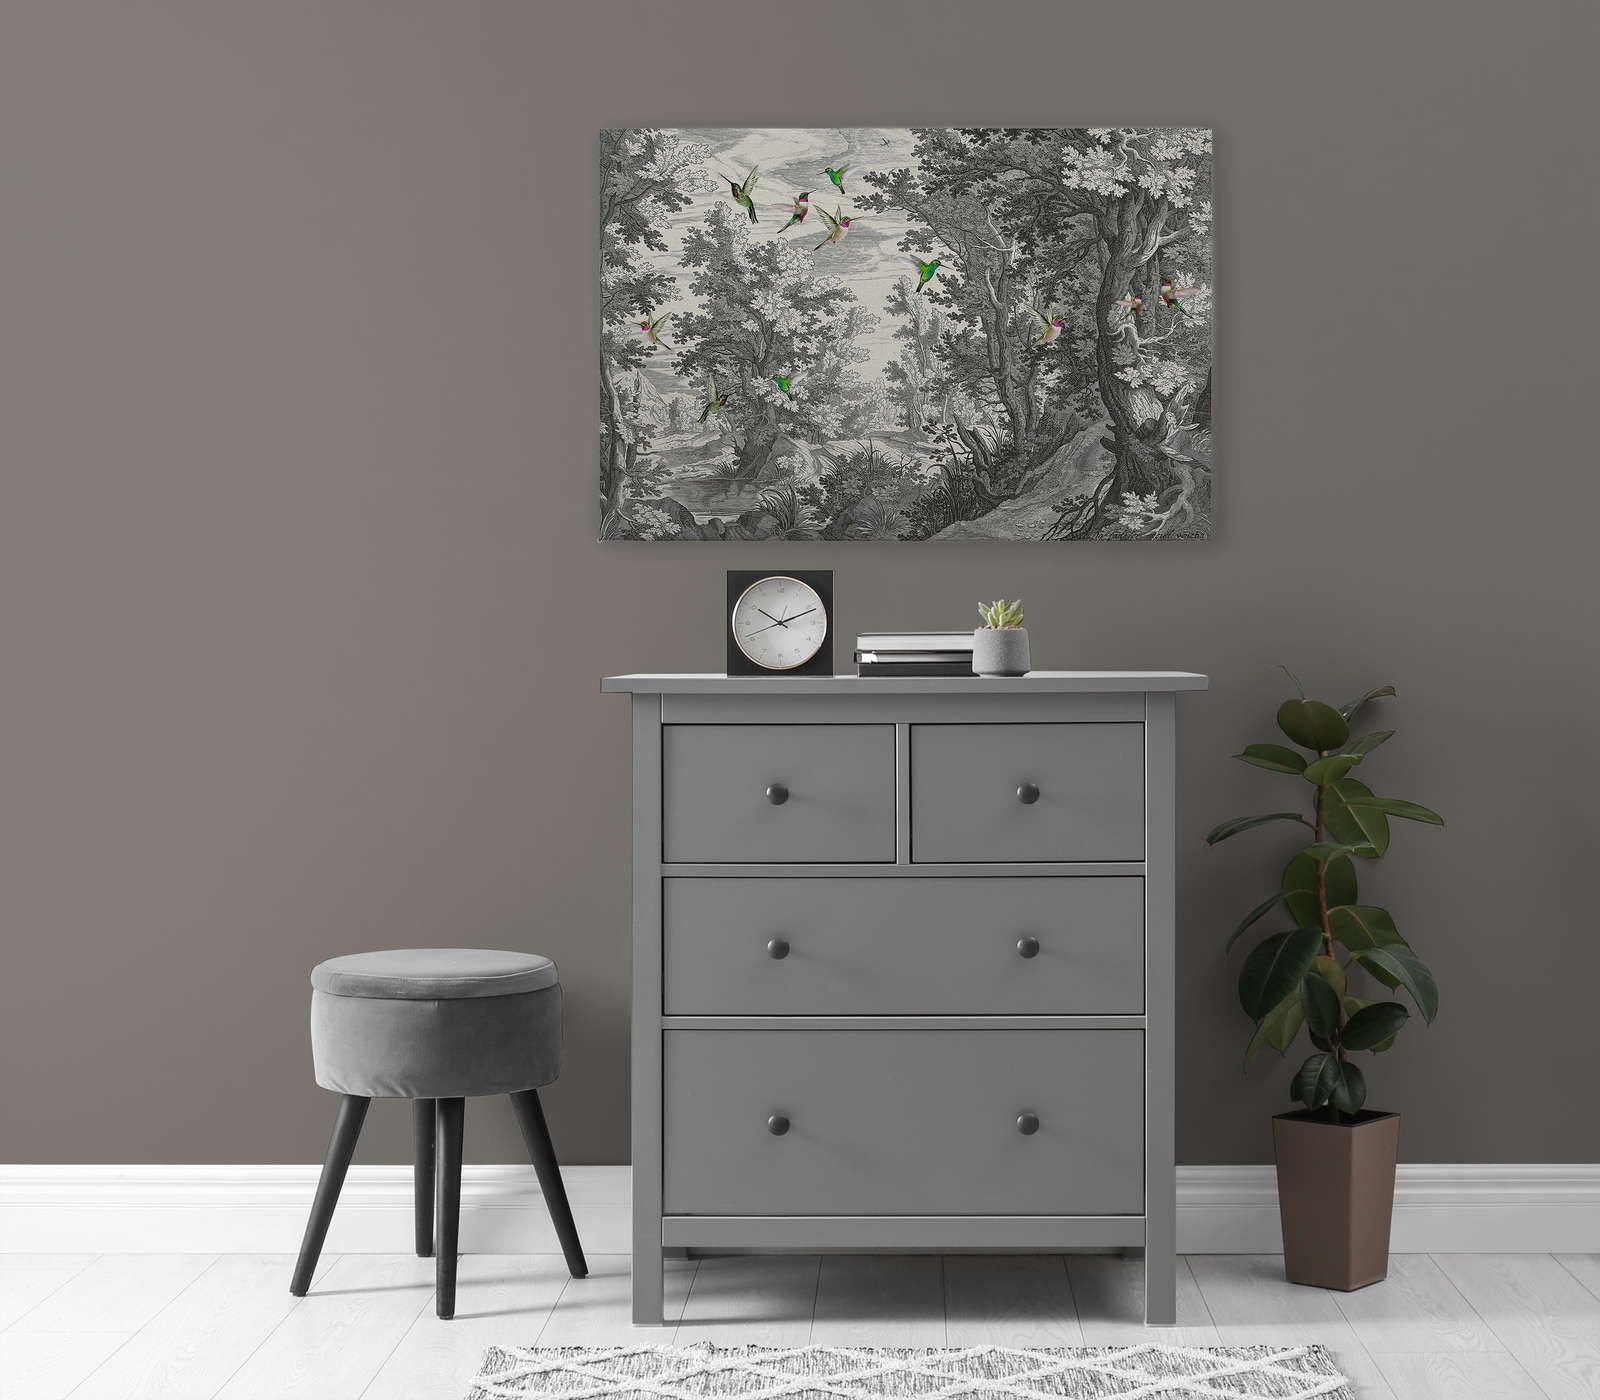             Fancy Forest 1 - Paysage toile impression d'art avec des oiseaux - 0,90 m x 0,60 m
        